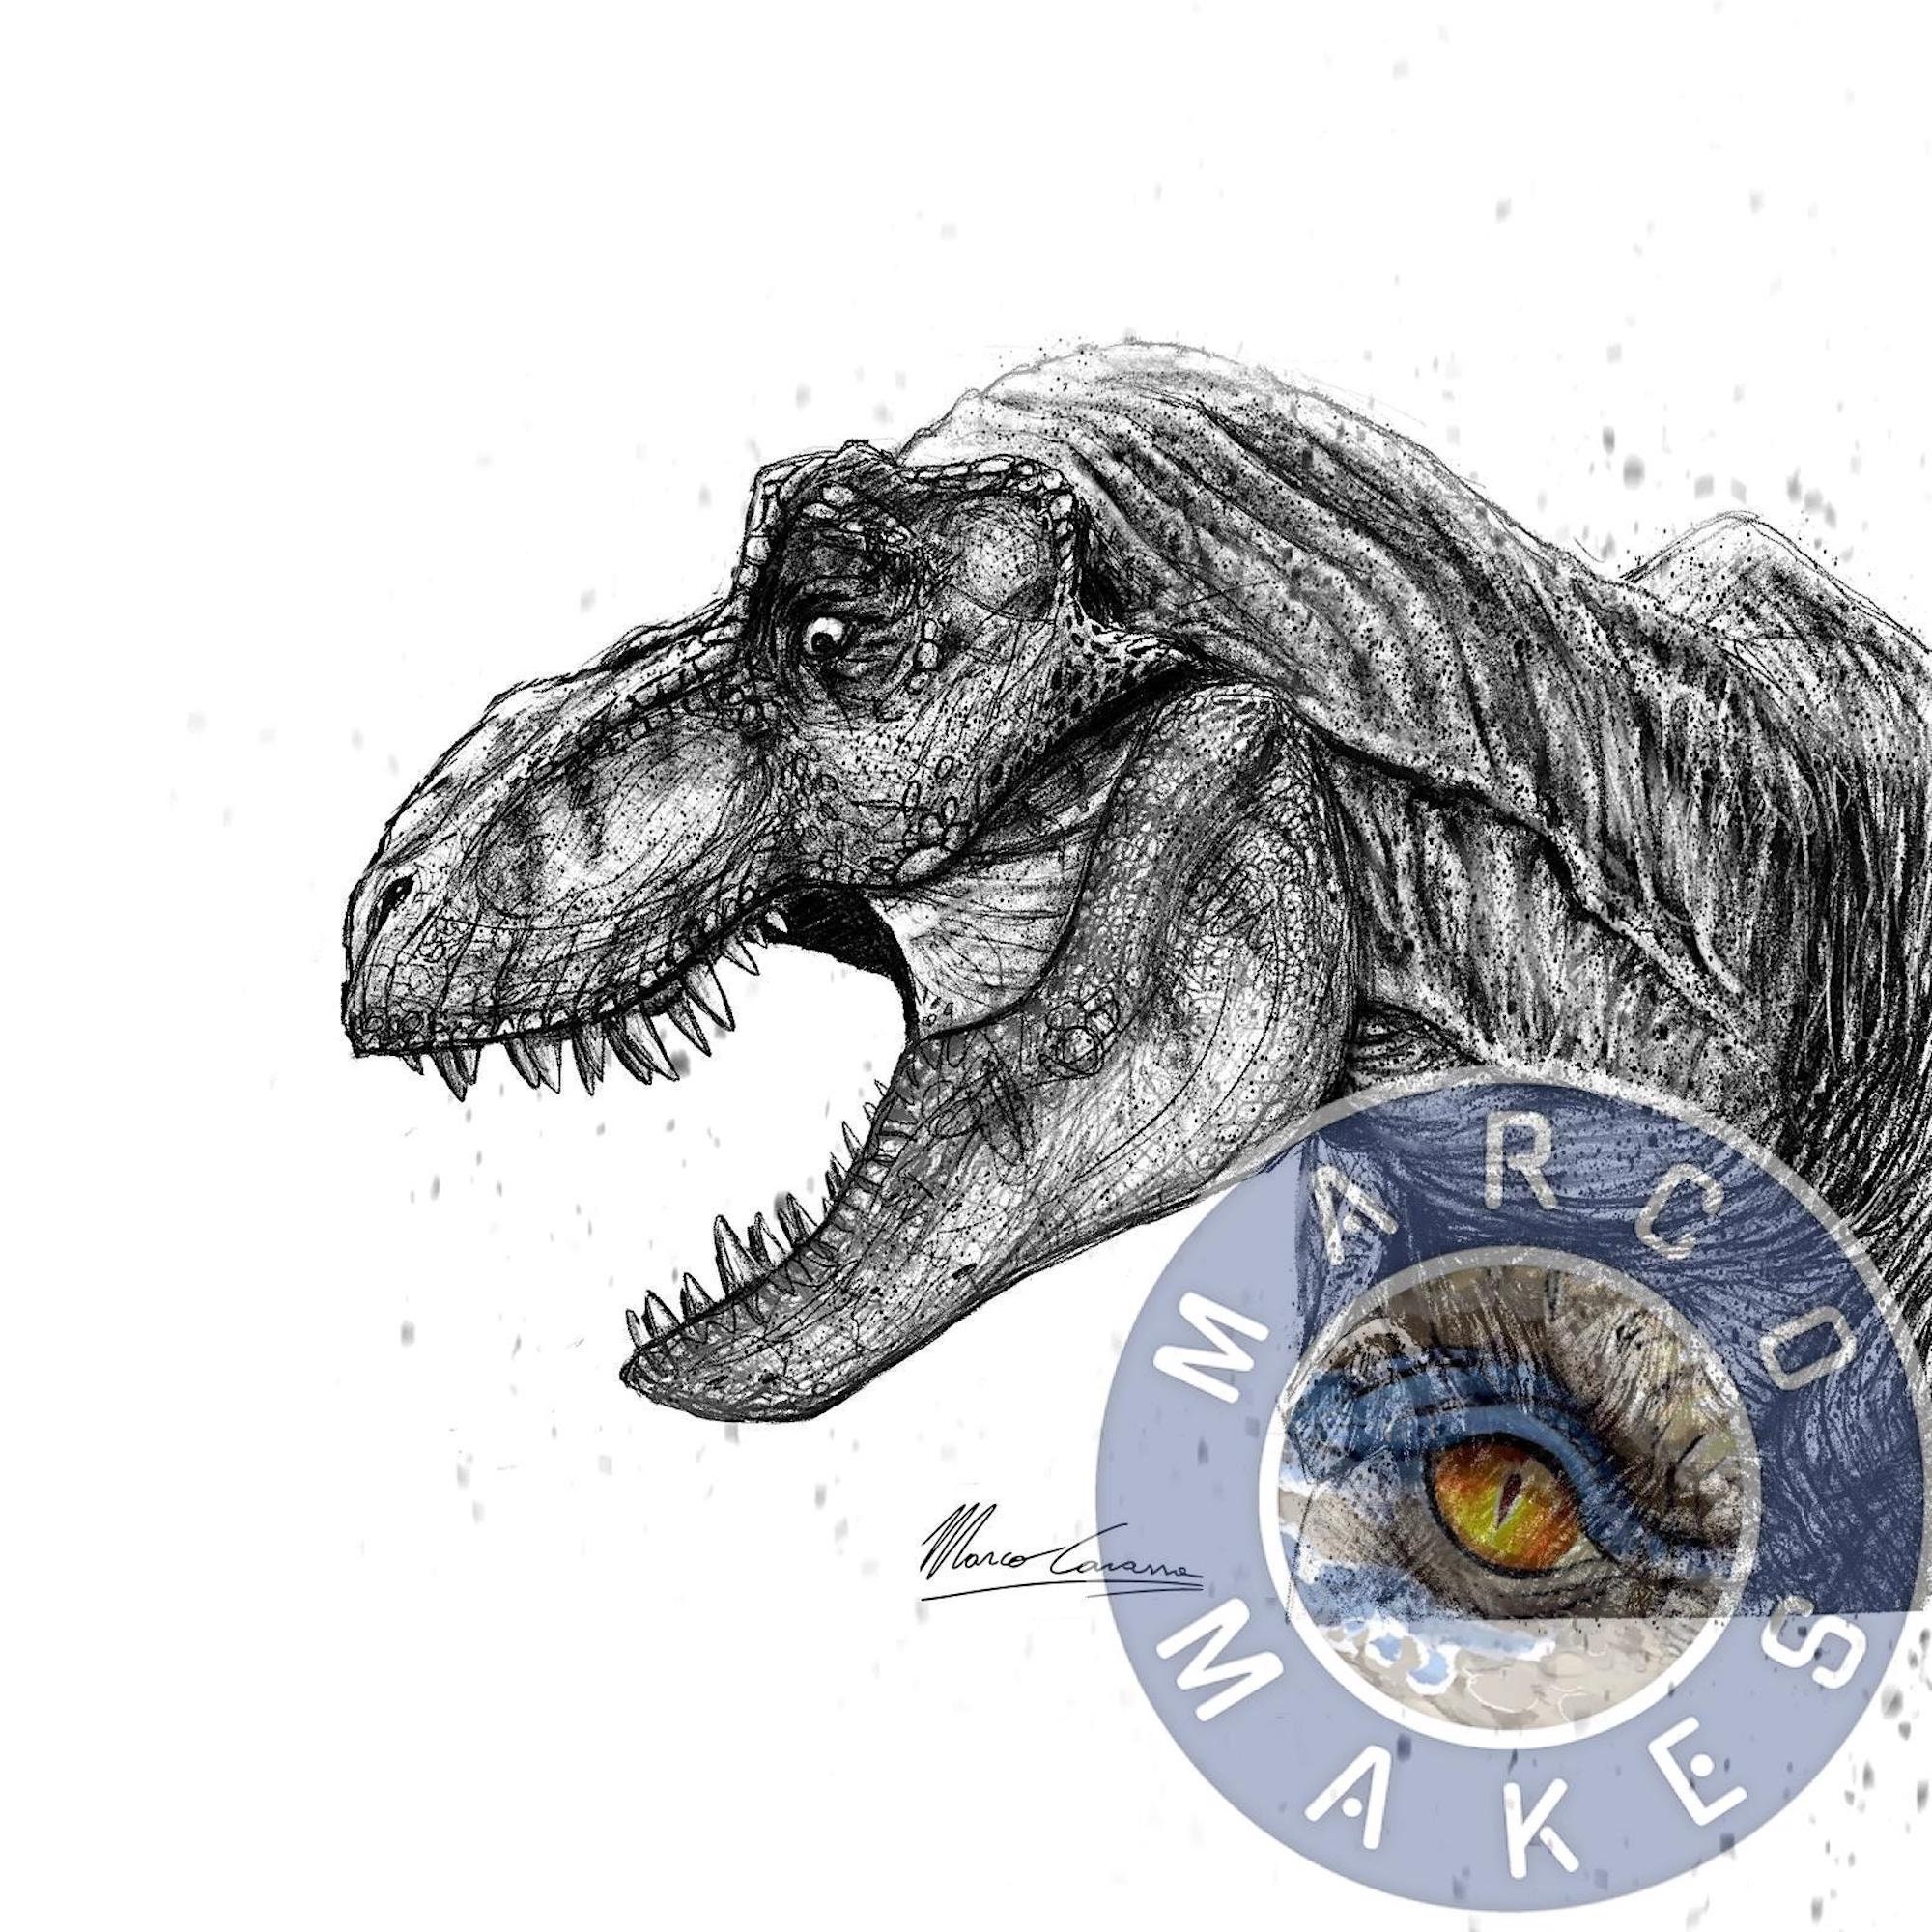 How to draw a Tyrannosaurus rex dinosaur  Science Museum of Minnesota